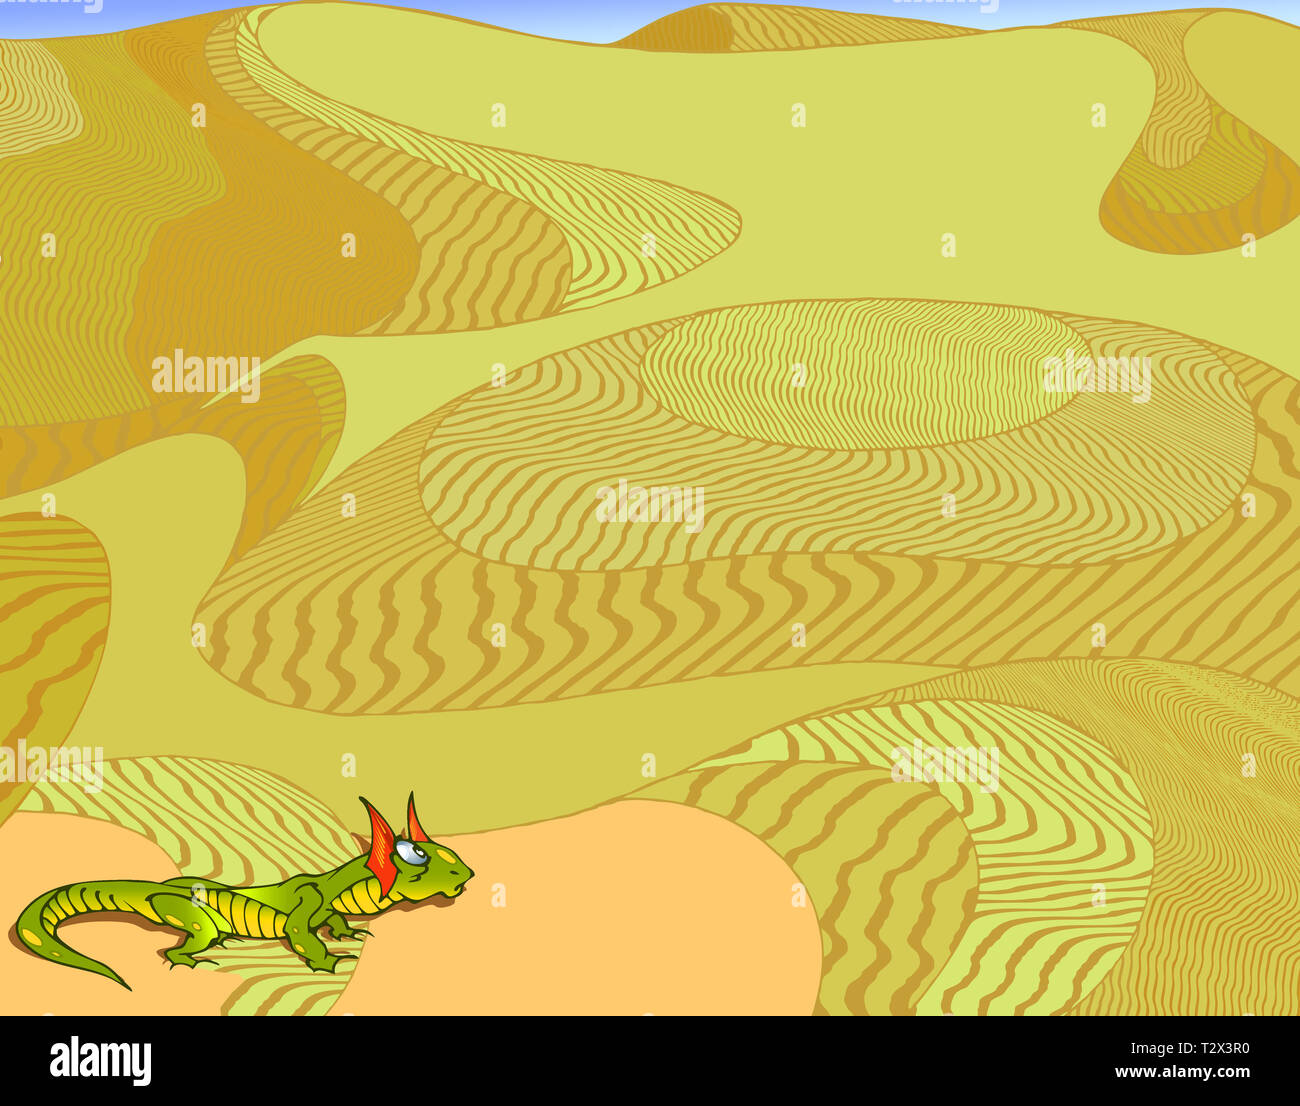 En una ilustración de fondo estilizado con un paisaje de amarillo desierto. Y de un verde brillante, lizard en primer plano. Foto de stock